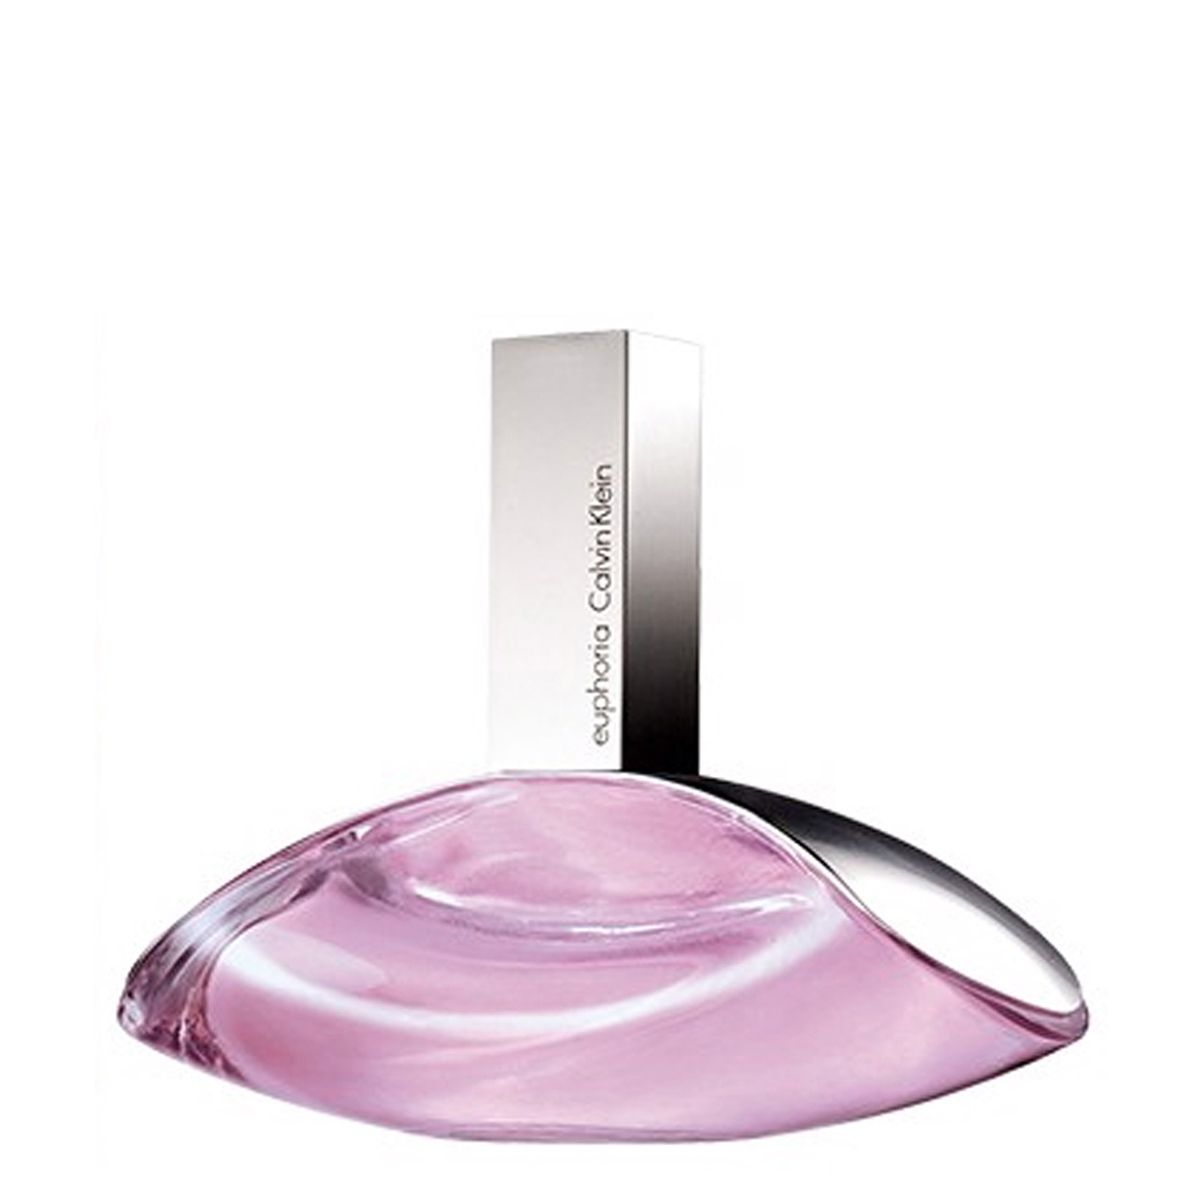  Calvin Klein Euphoria Eau de Parfum for Woman Travel Spray 